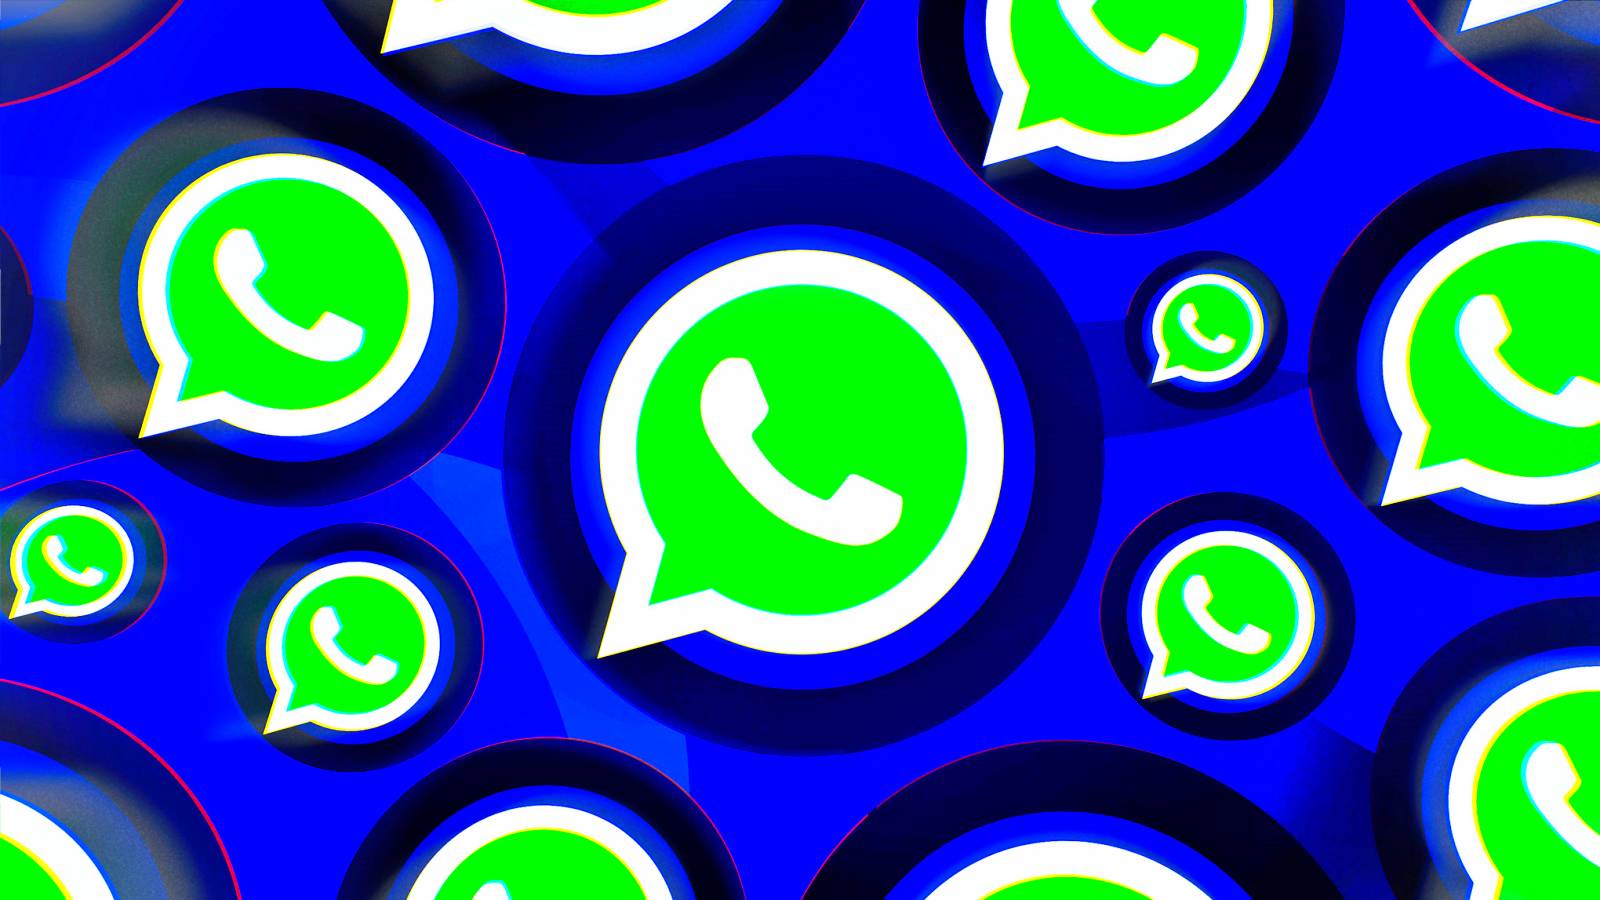 Registro de WhatsApp anunciado oficialmente por miles de millones de personas